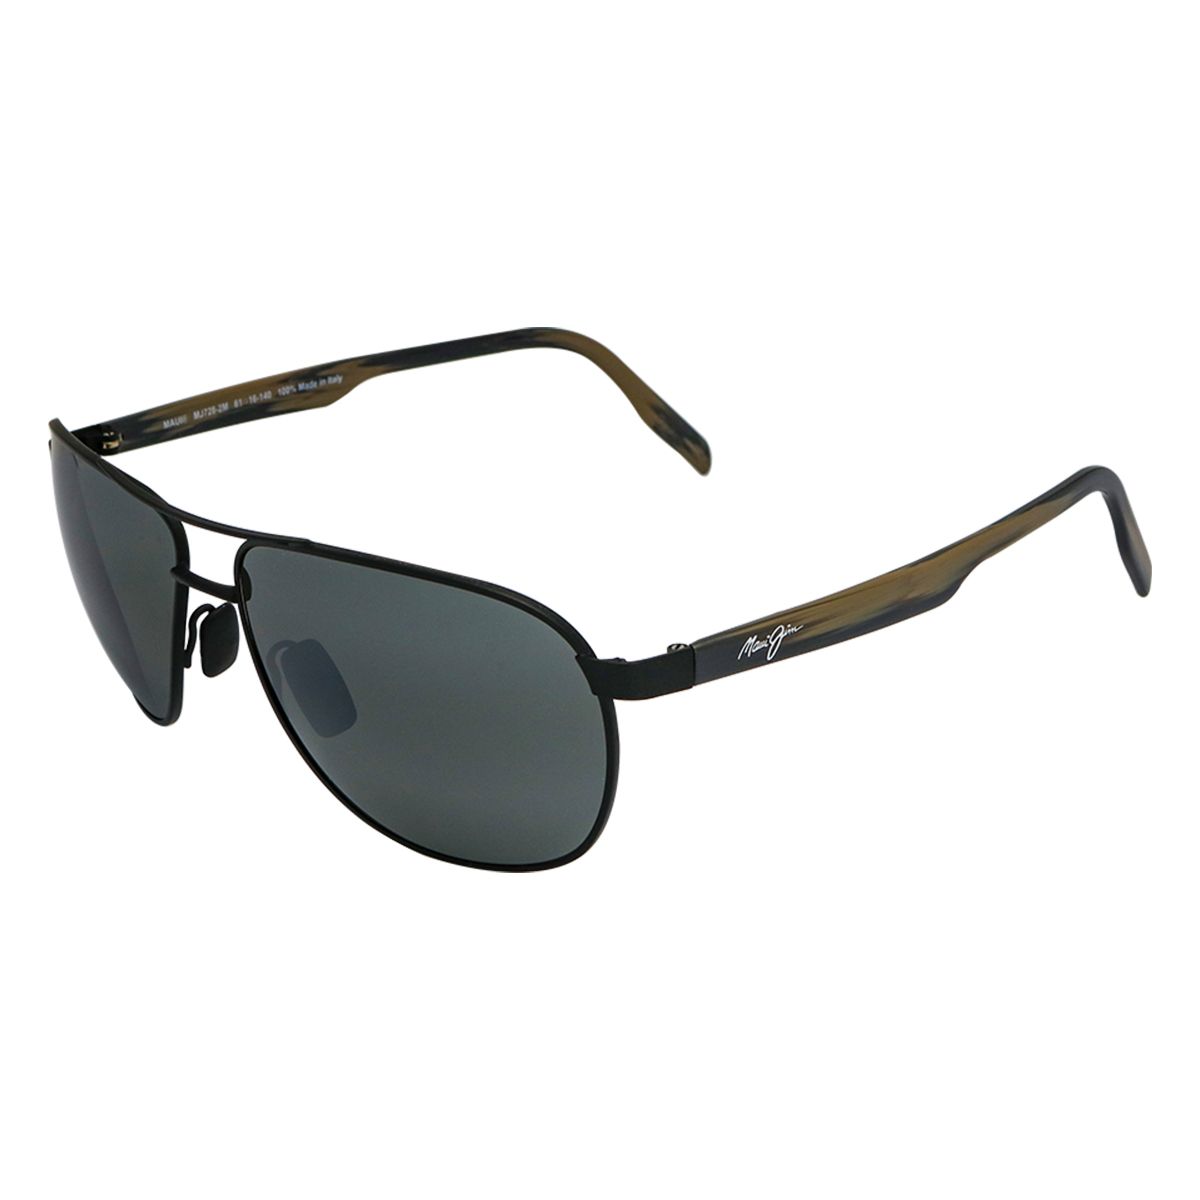 MJ728 Pilot Sunglasses 2M - size 61